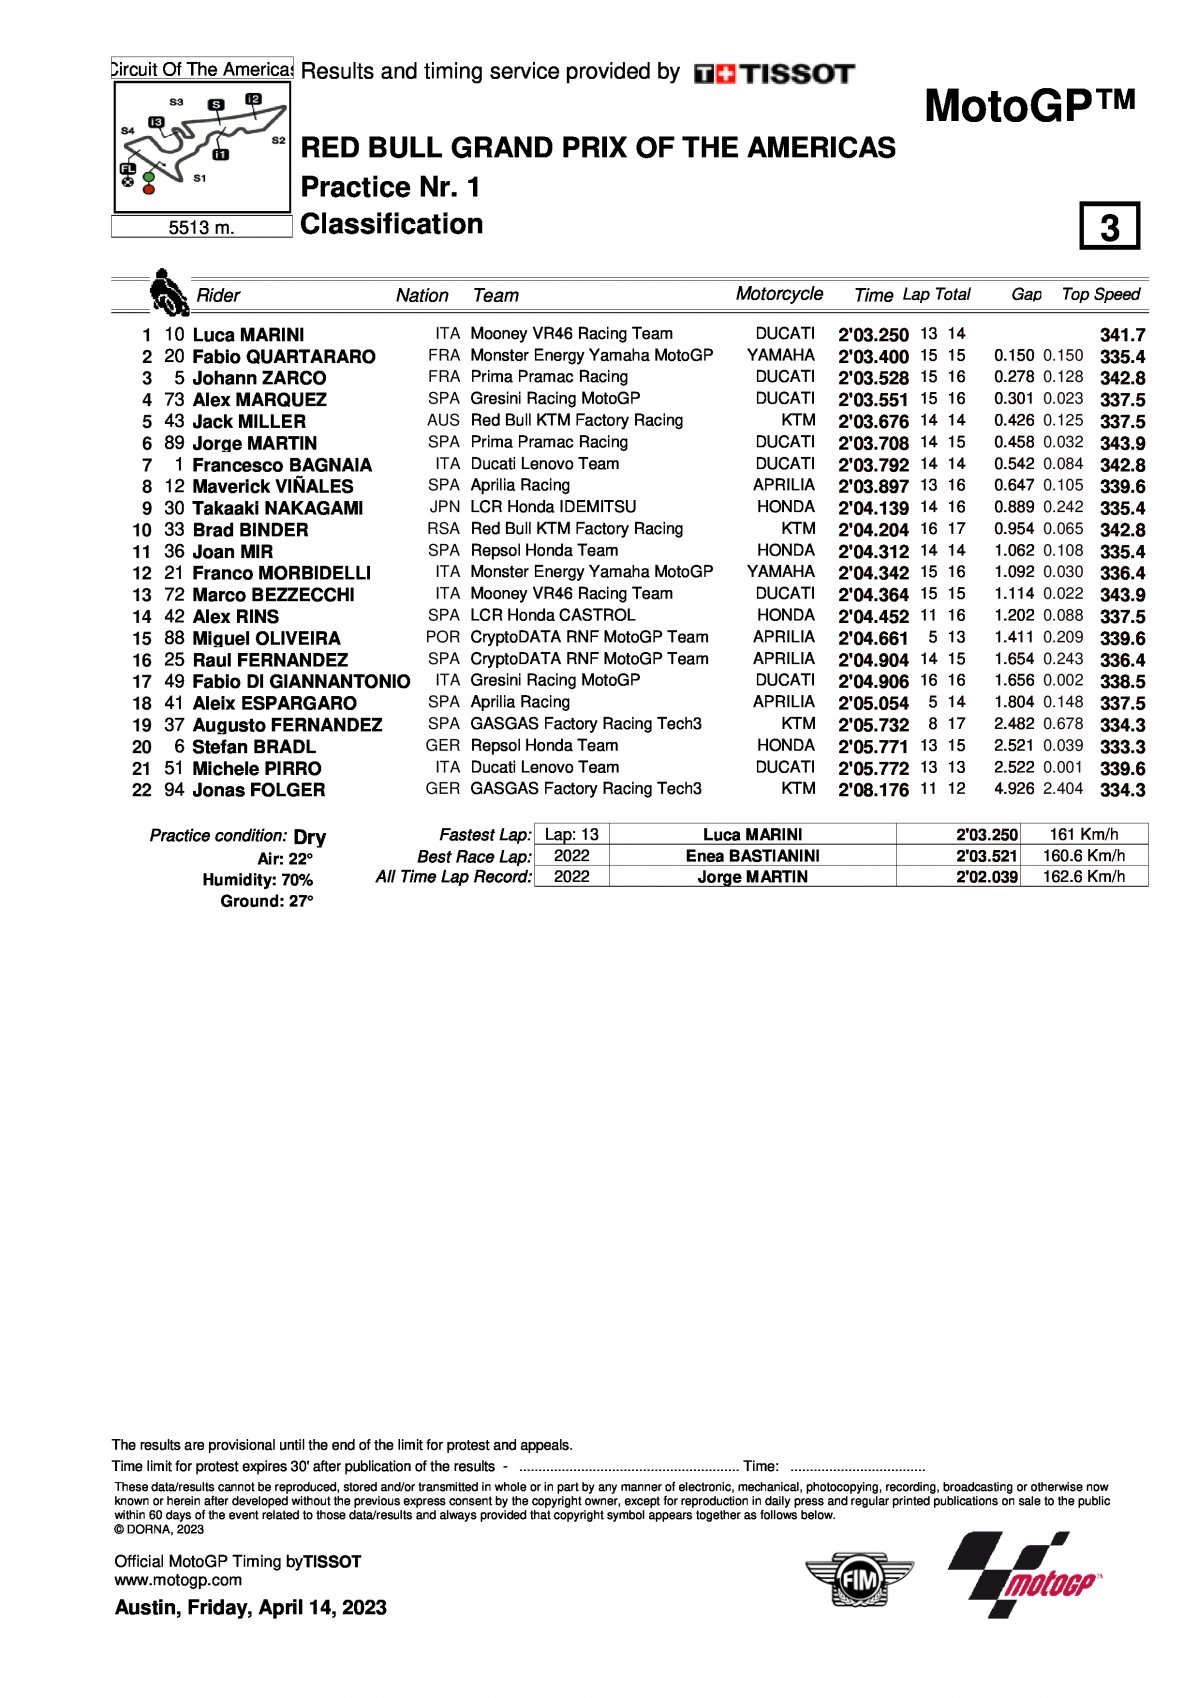 Результаты FP1 Гран-При Америк, MotoGP (14/04/2023)